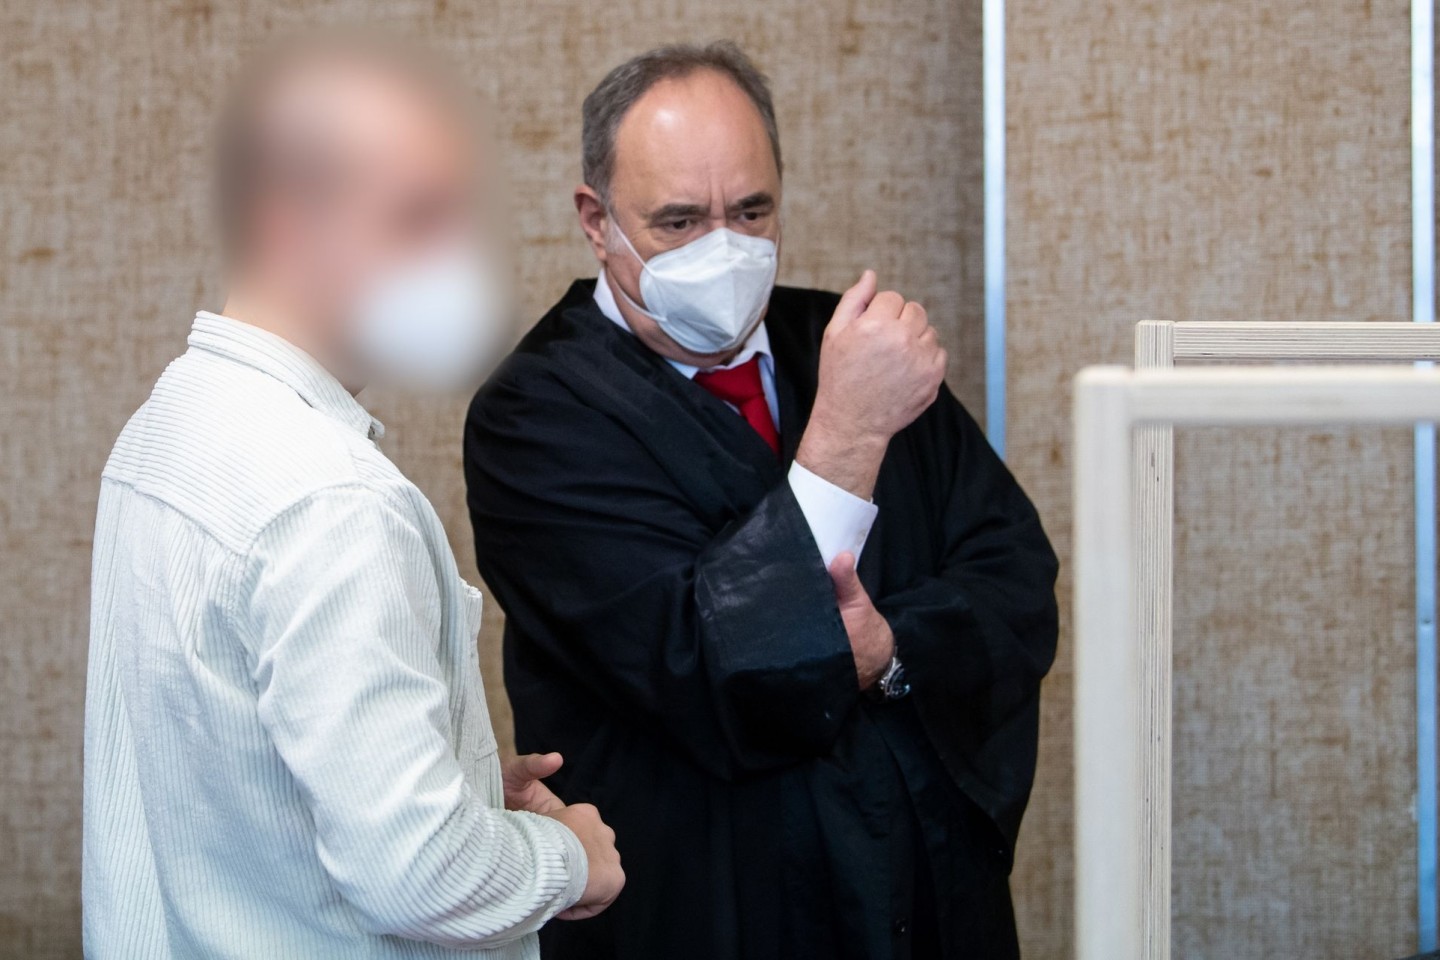 Der angeklagte Polizist (l) mit seinem Anwalt im Verhandlungssaal. Der Mann wurde zu einer Geldstrafe von 13.200 Euro verurteilt.